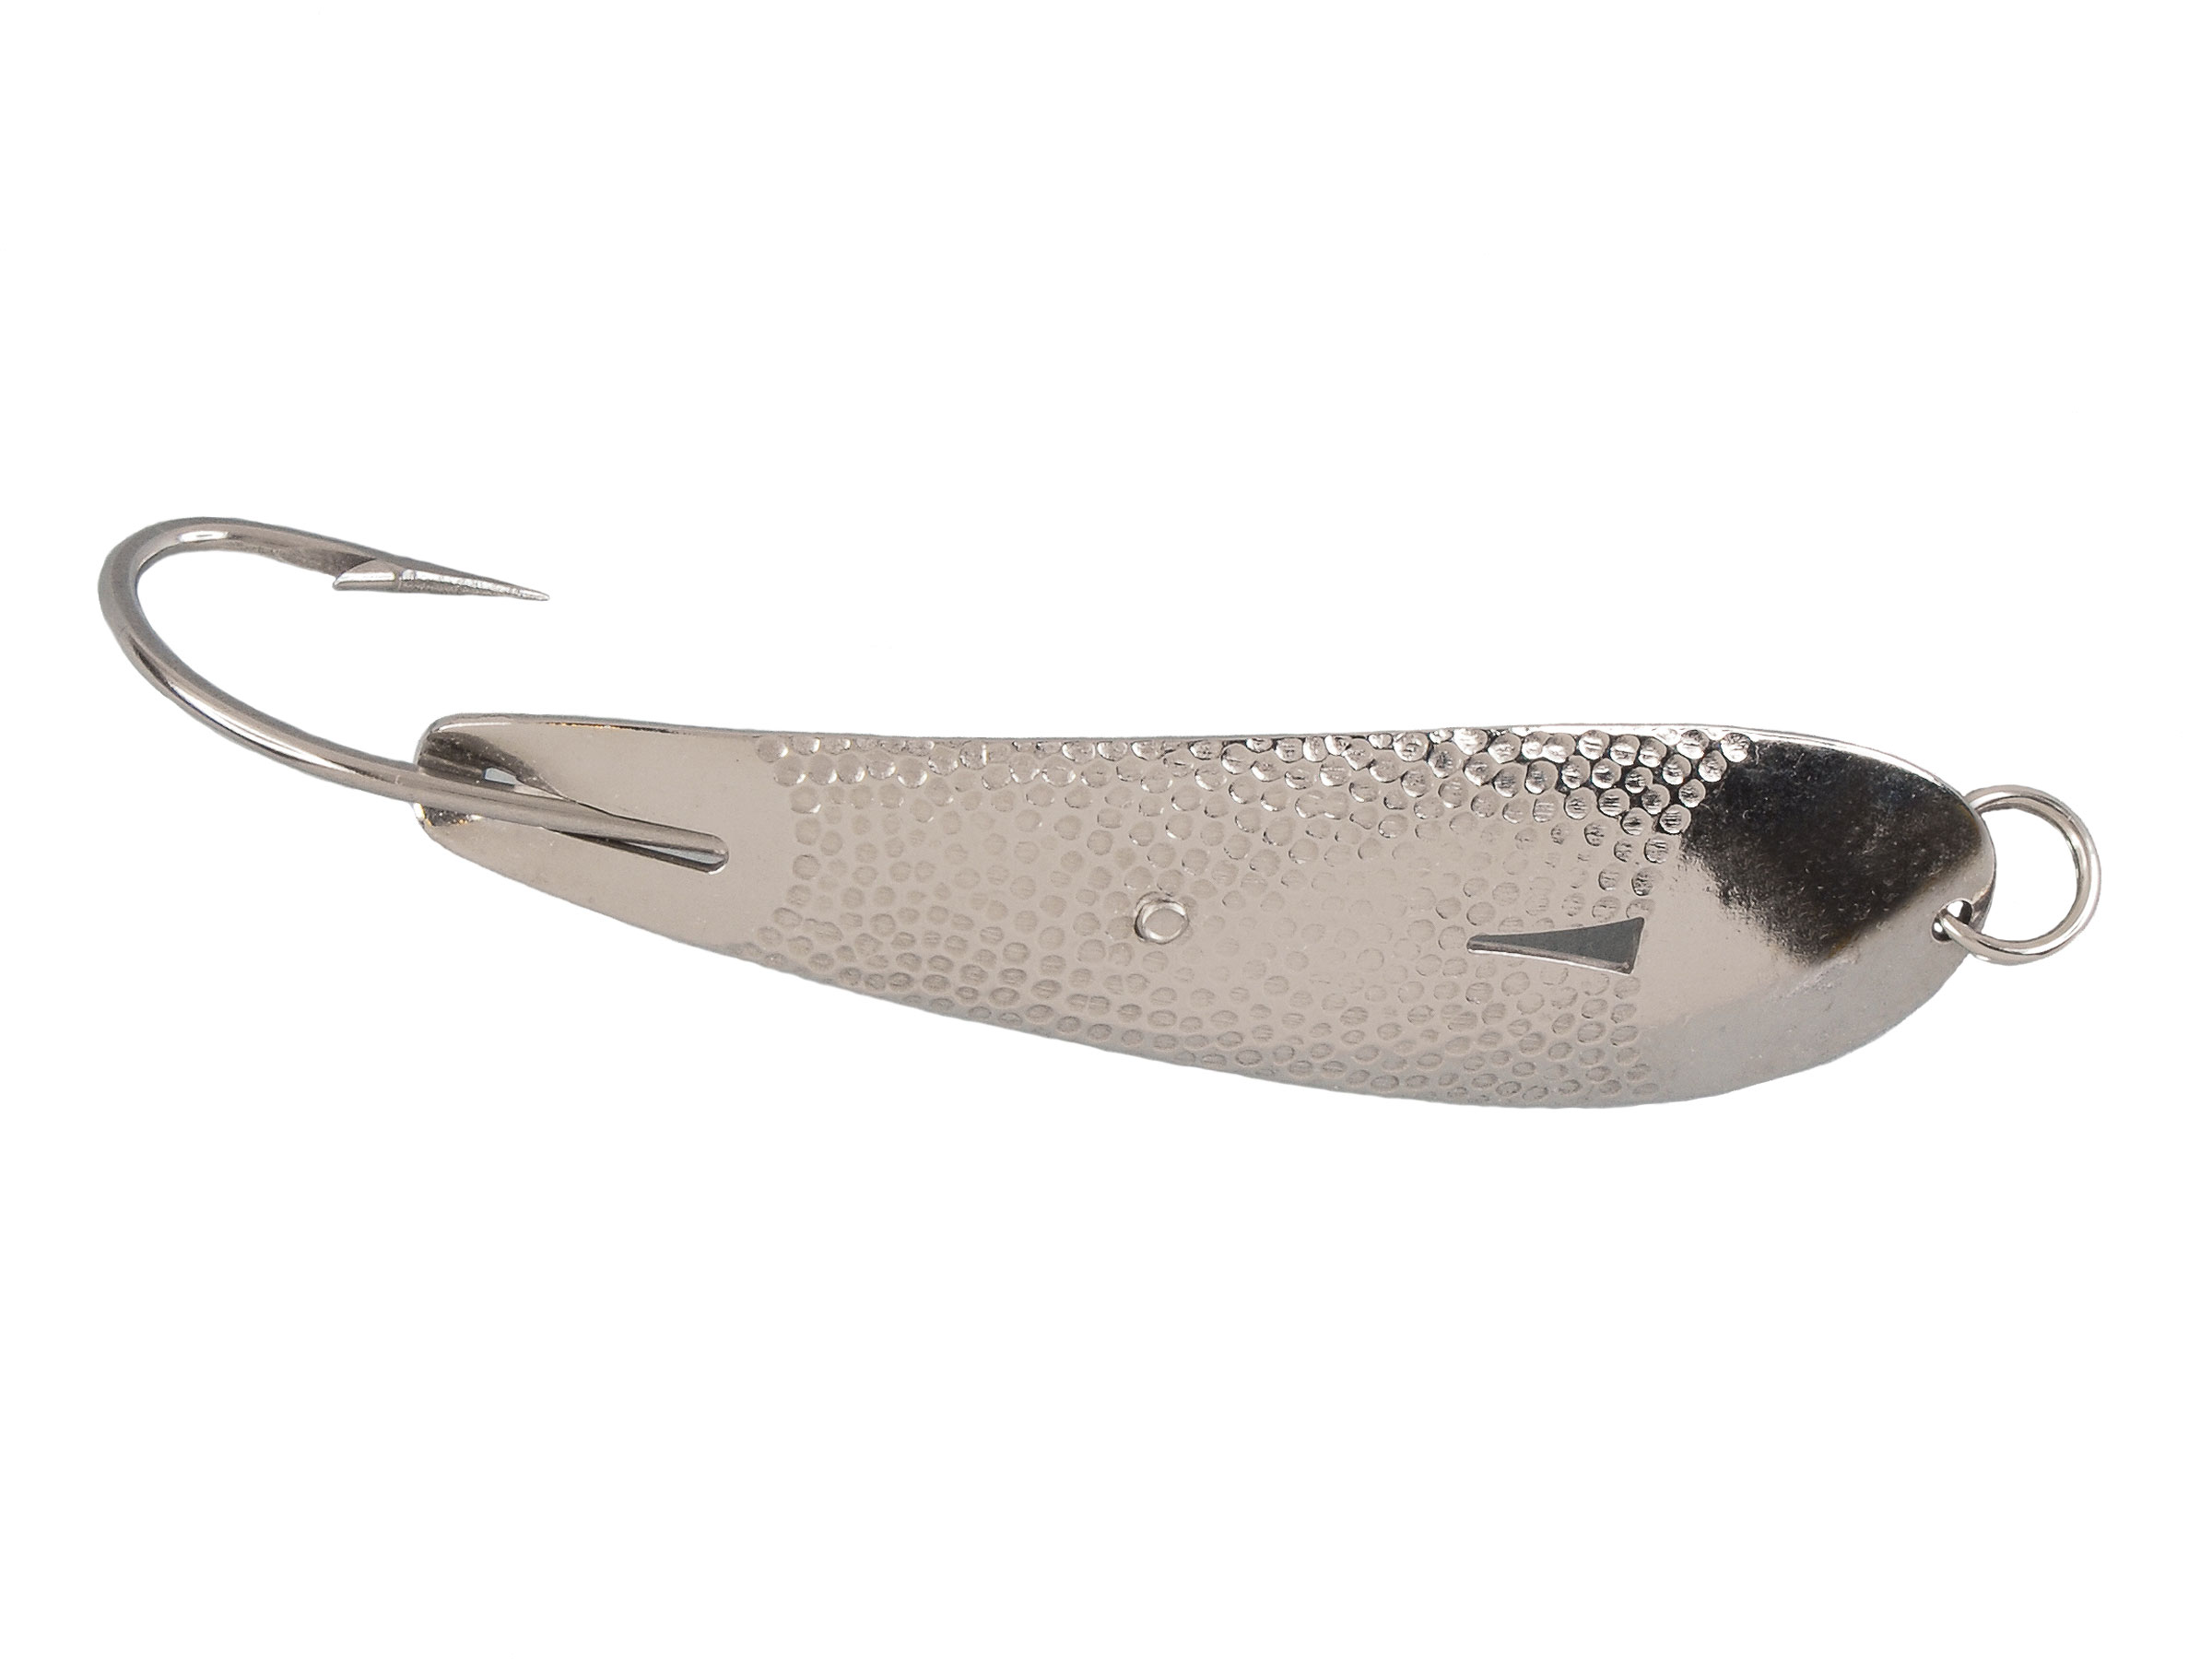 Vintage Hopkins Shorty 75, 3/4oz nickel fishing spoon #20155